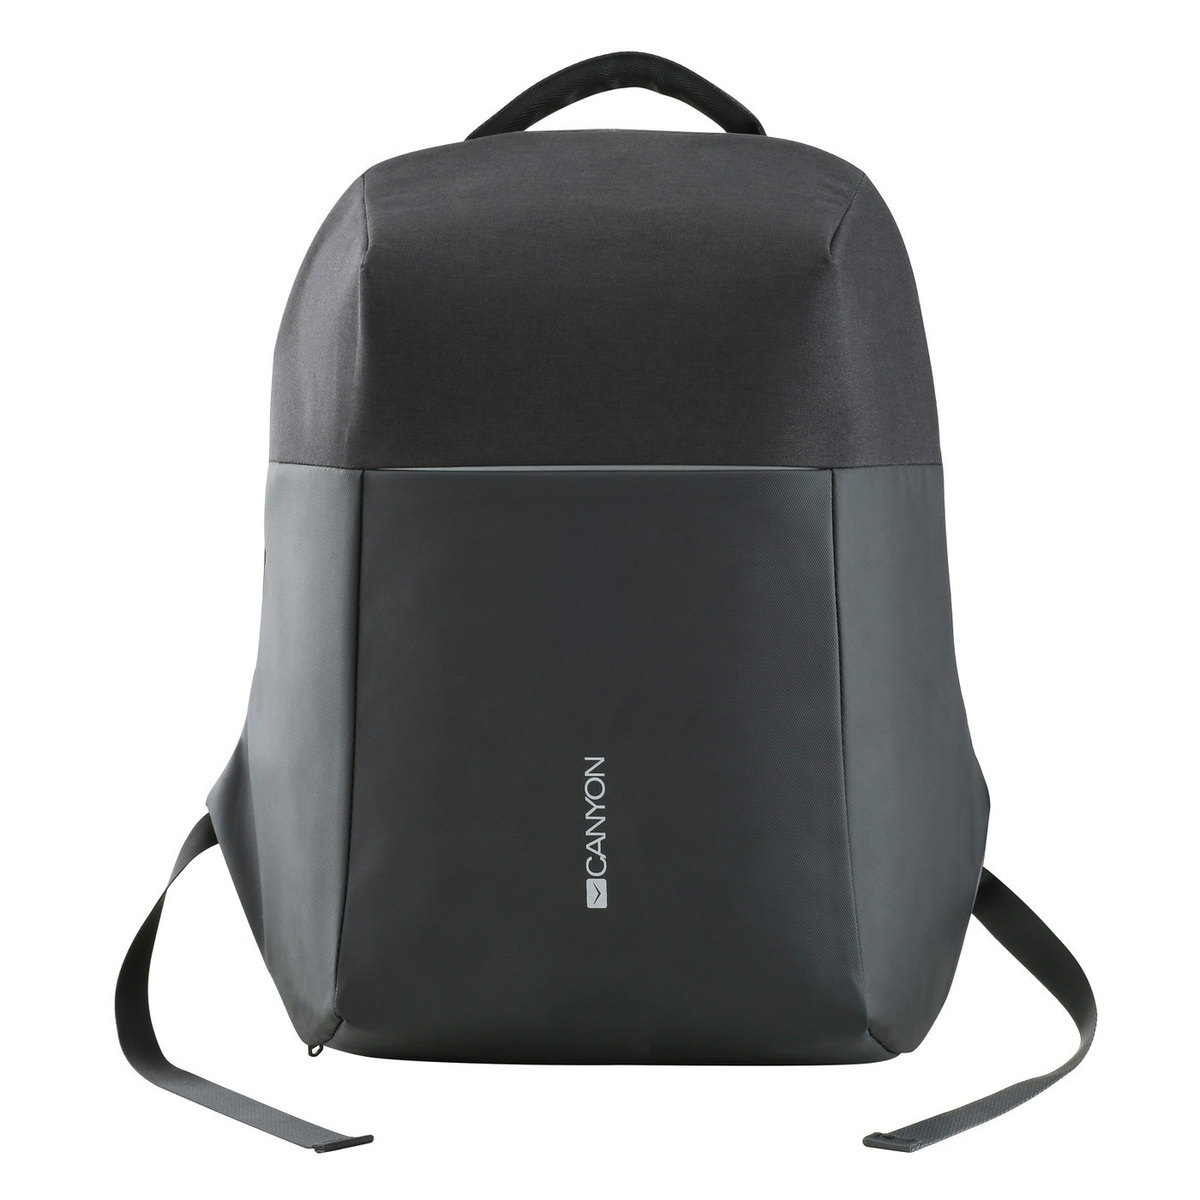 Рюкзак для ноутбуков с защитой от краж Canyon 15.6 BP-9, Рюкзак для ноутбуков с защитой от краж Canyon #1